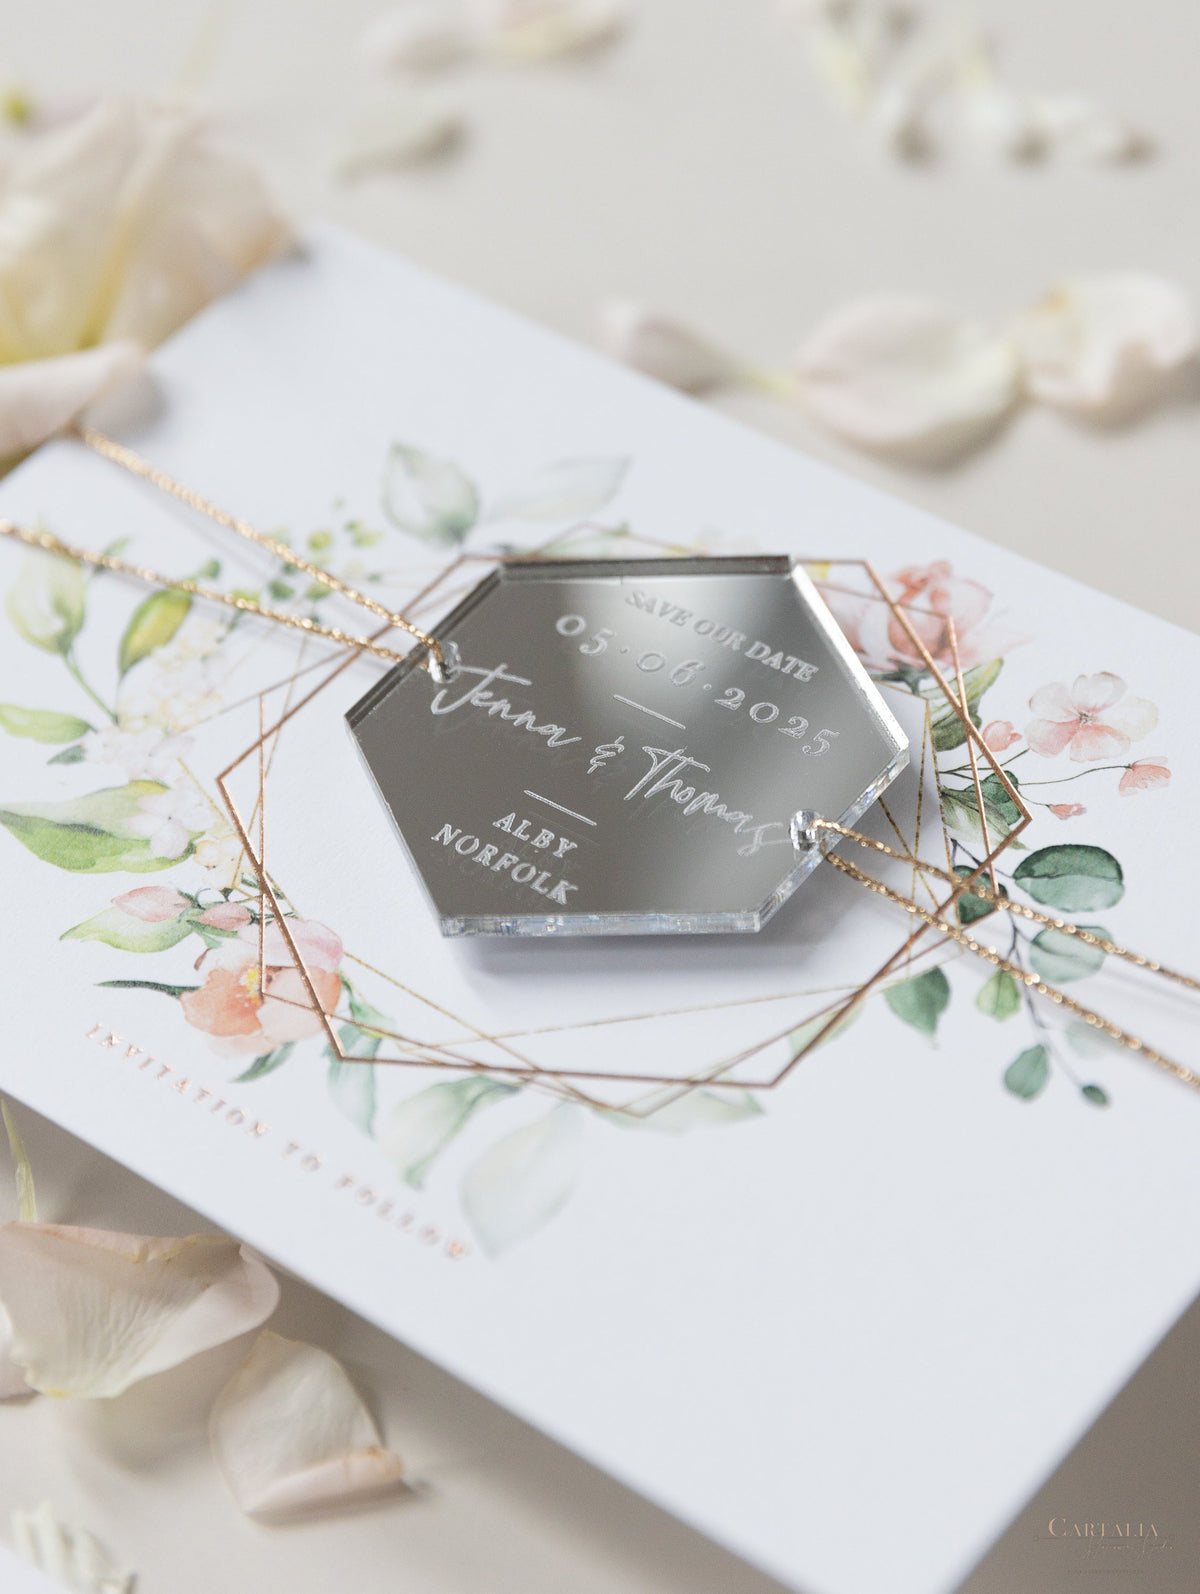 Biglietto salva-data con magnete a specchio in argento a forma di cuore inciso con vera lamina